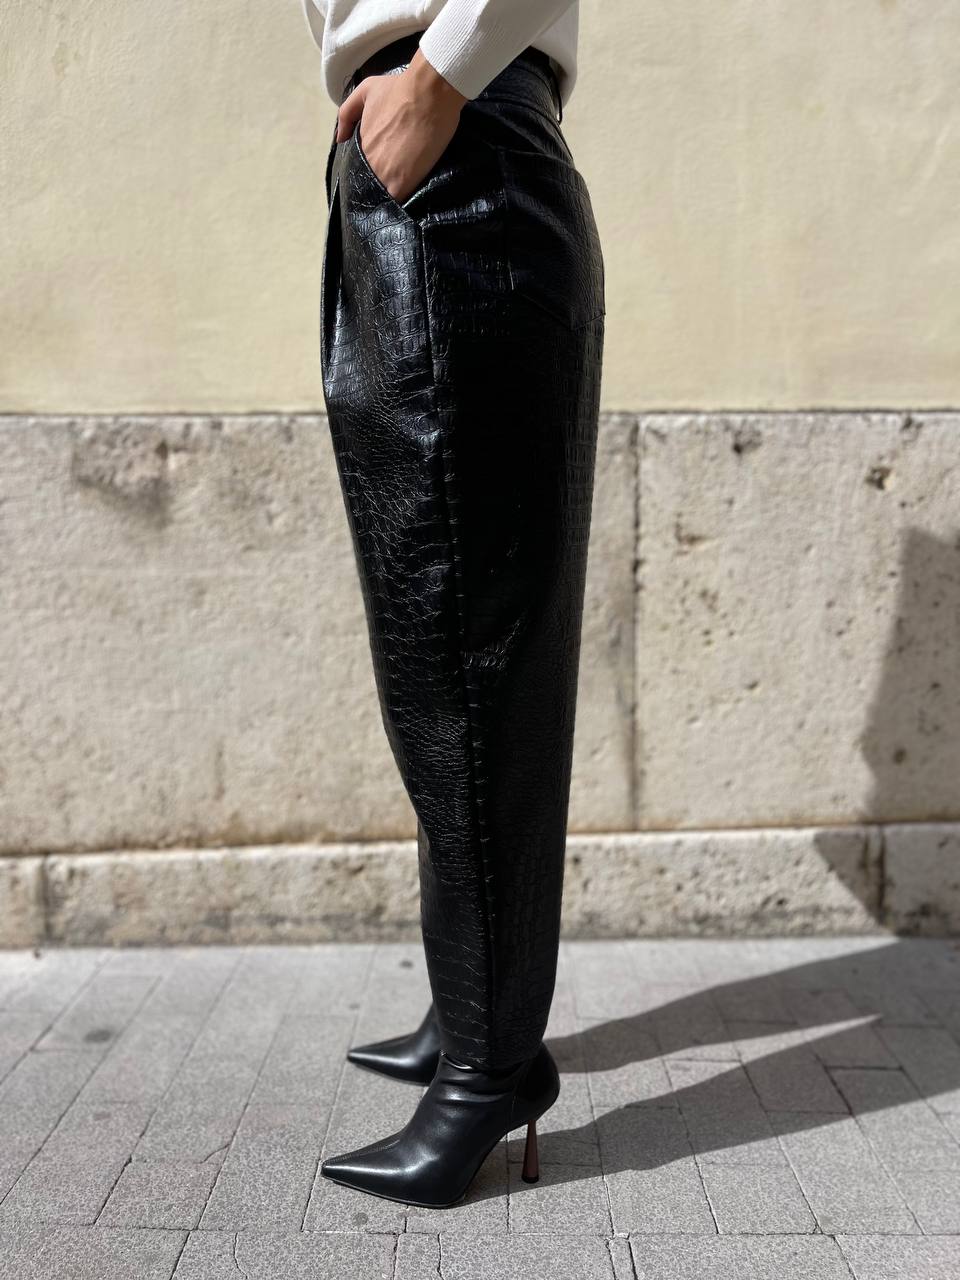 Madame Urbana pantalone ecopelle (disponibile nero e testa di moro)